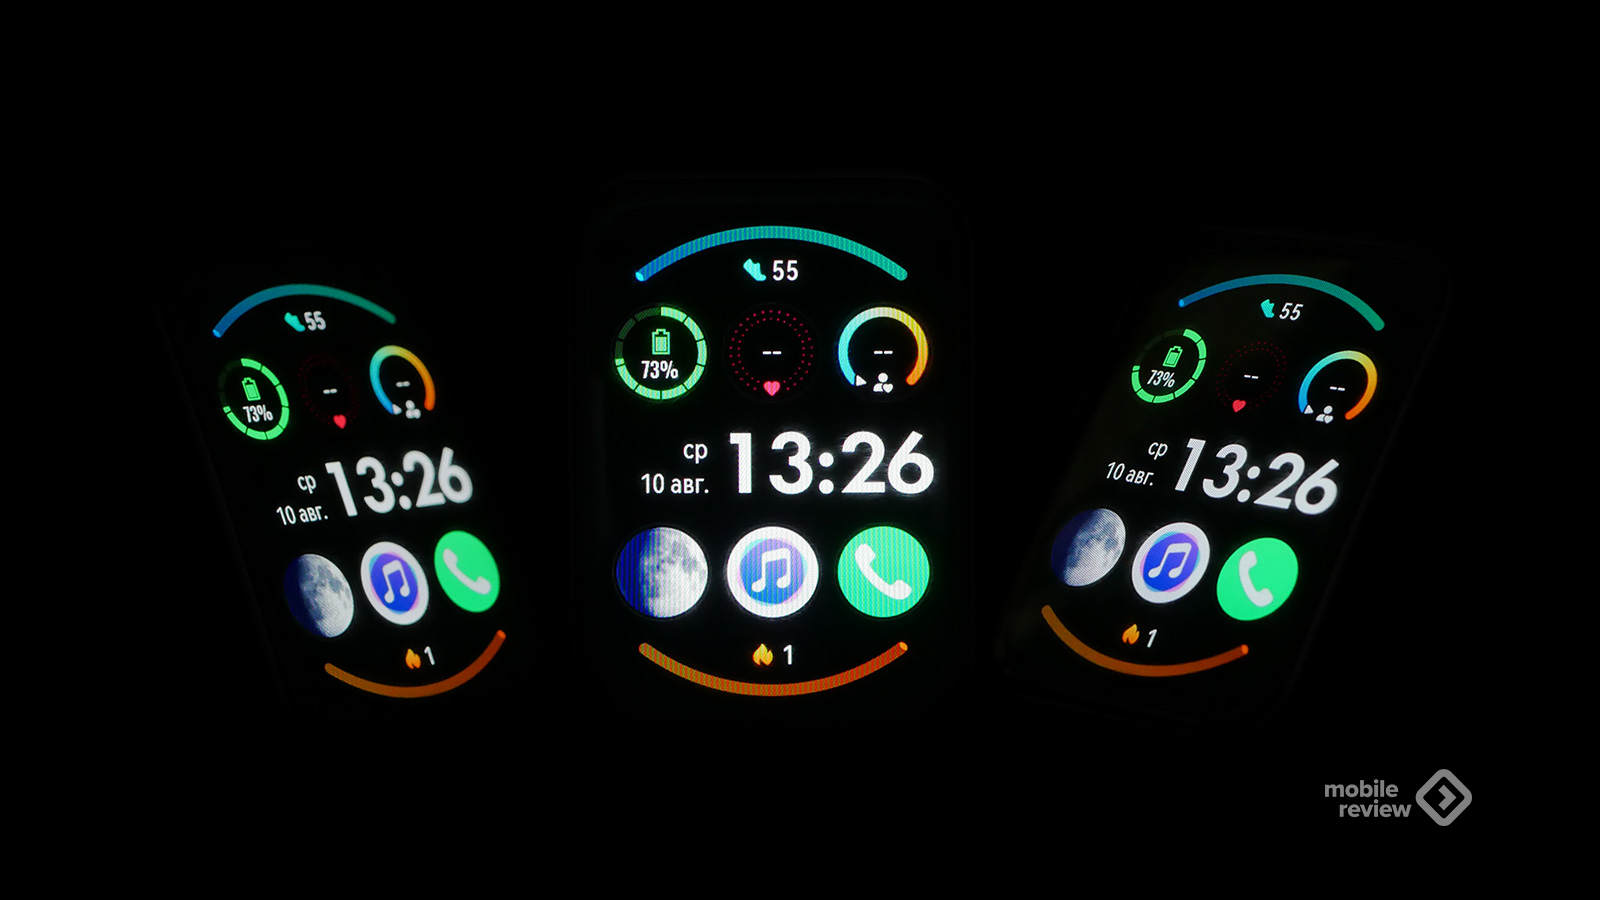 Huawei watch fit 2 отвечают на звонки с телефоном readme и обзором смарт-часов huawei watch fit. Персональный фитнес-тренер на вашем запястье!